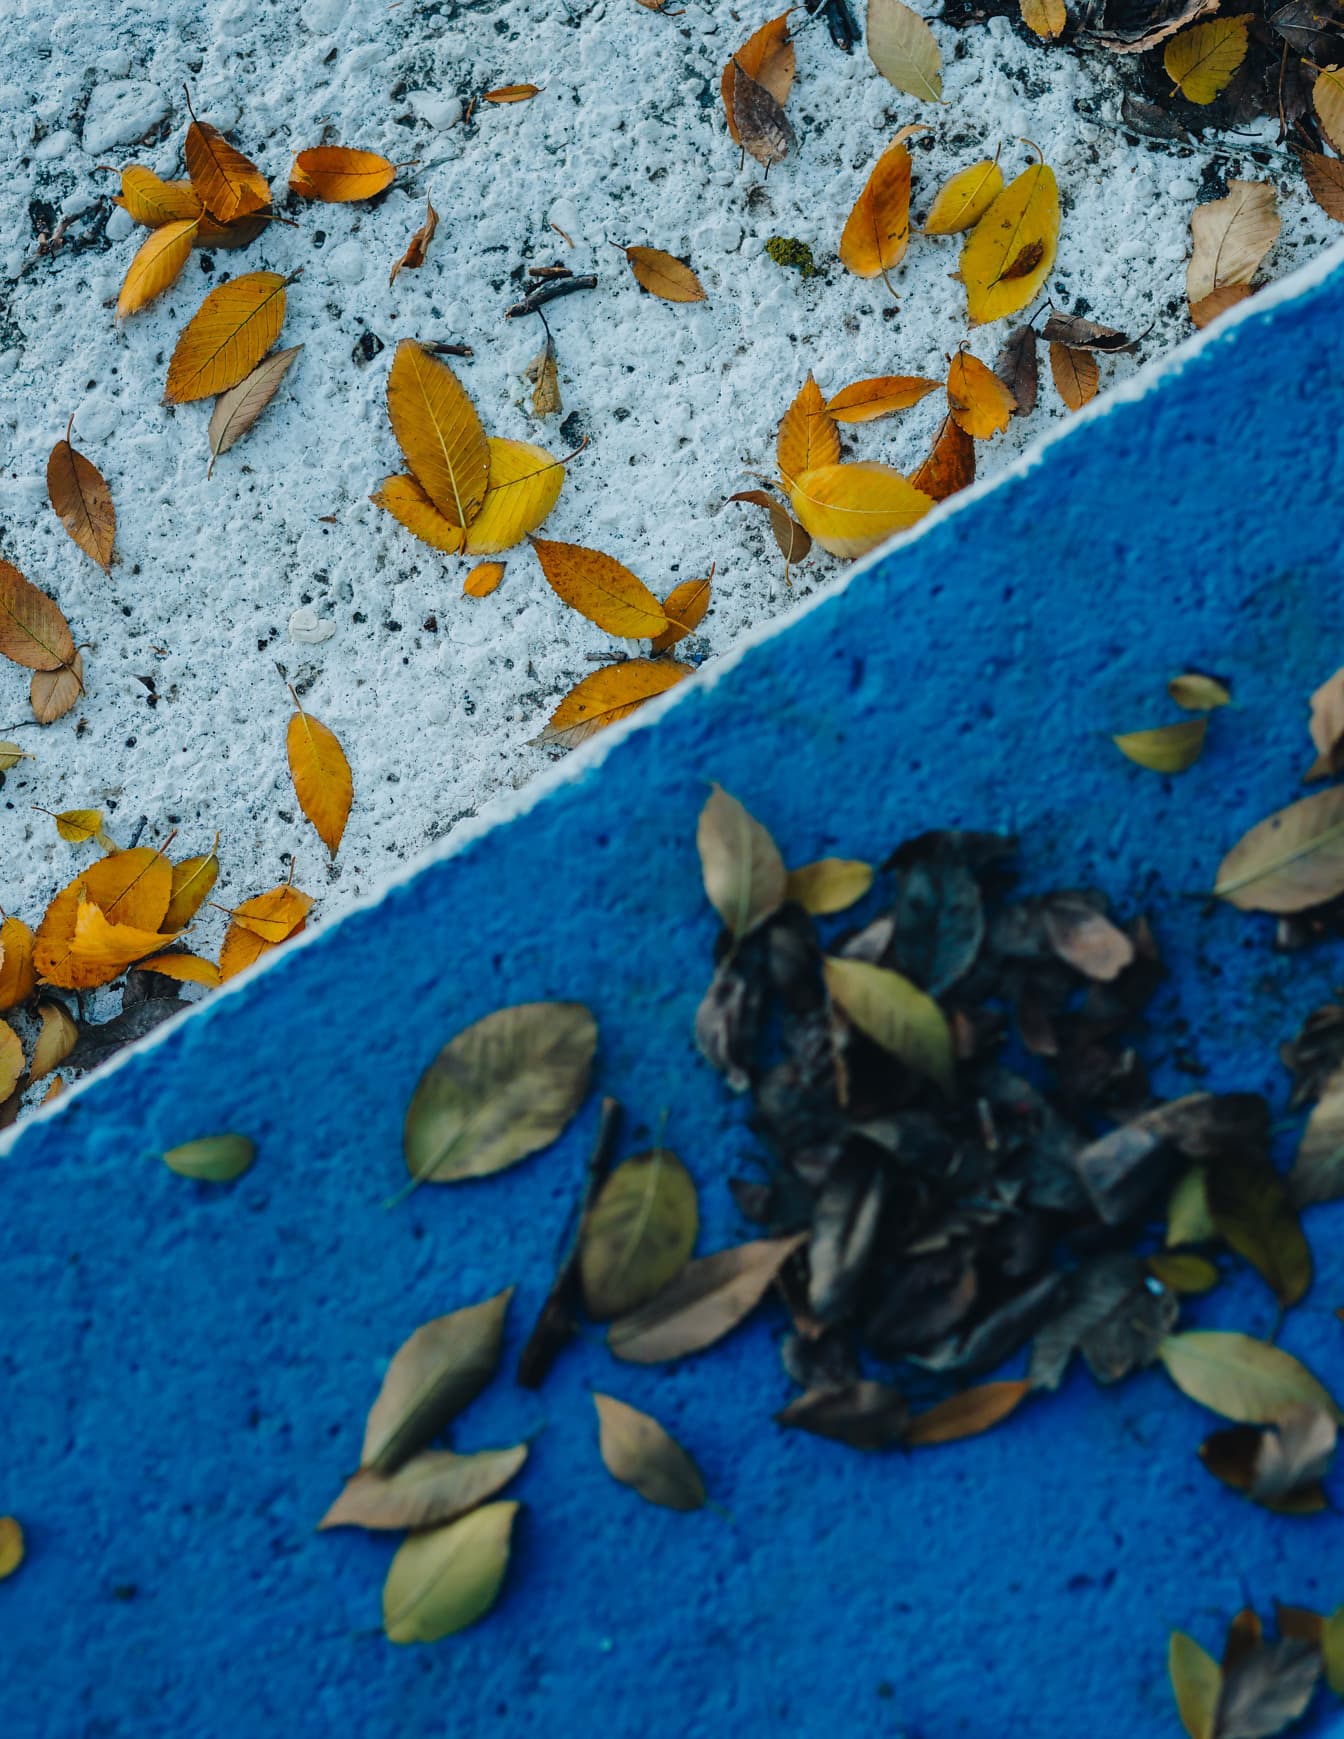 Vernice blu scuro e bianca su scale concreate con foglie gialle